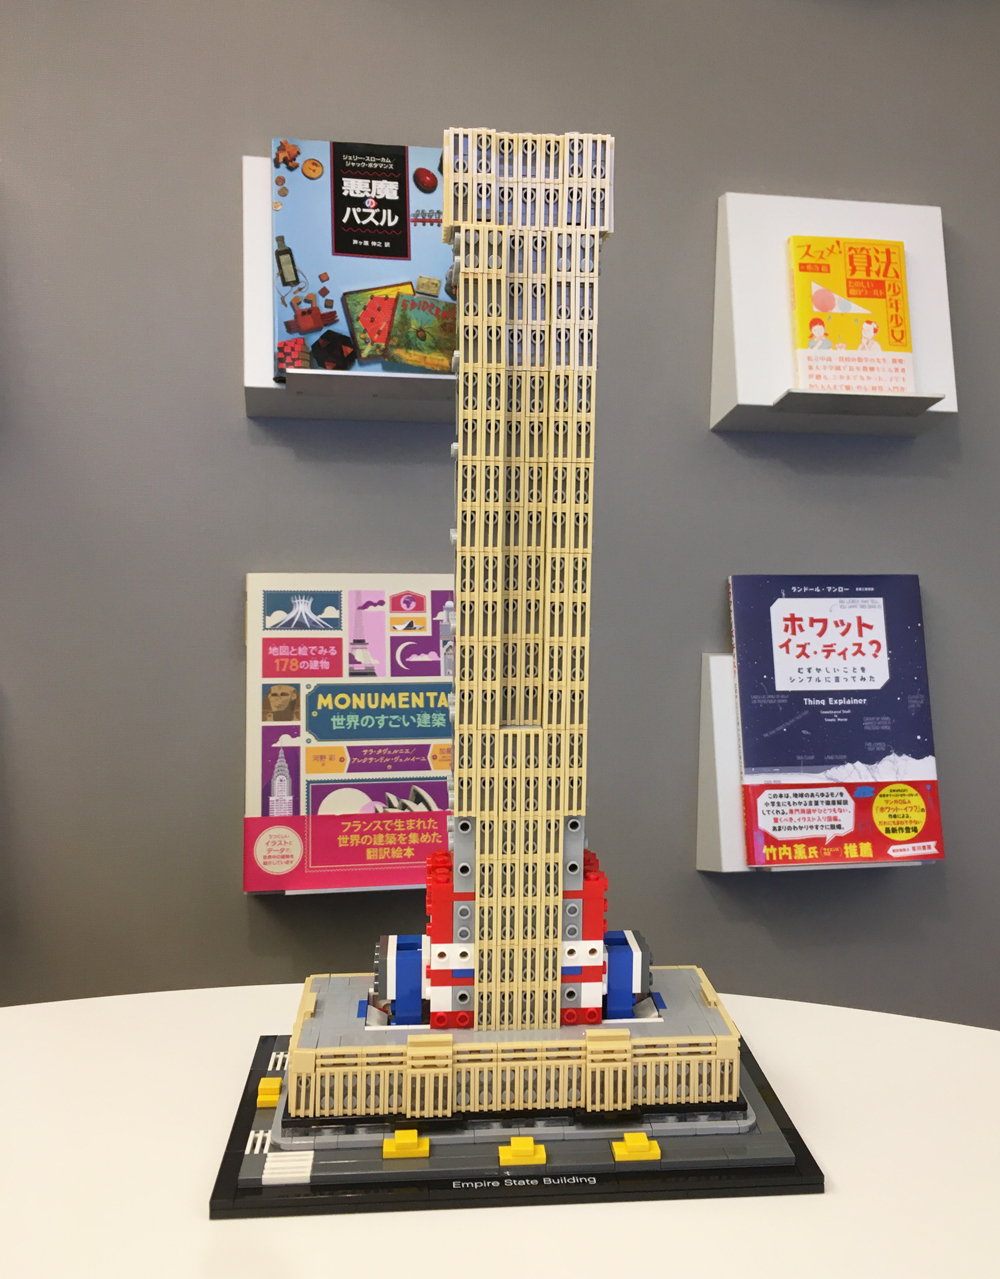 ニューヨークのエンパイア・ステート・ビルのレゴブロックを作ってみ 